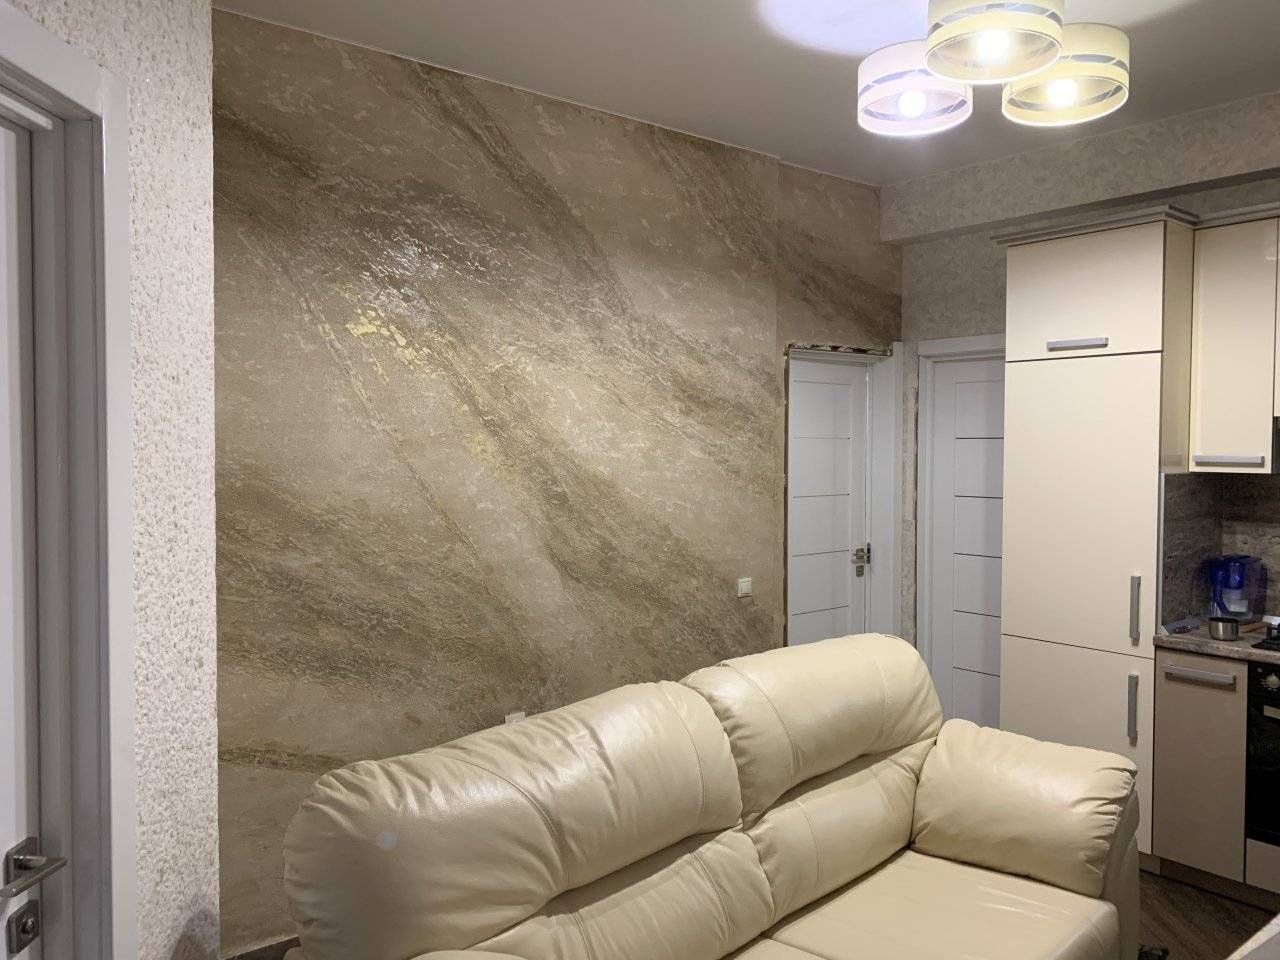 Обои под бетон: особенности отделки, преимущества имитации цементной стены, использование в интерьере